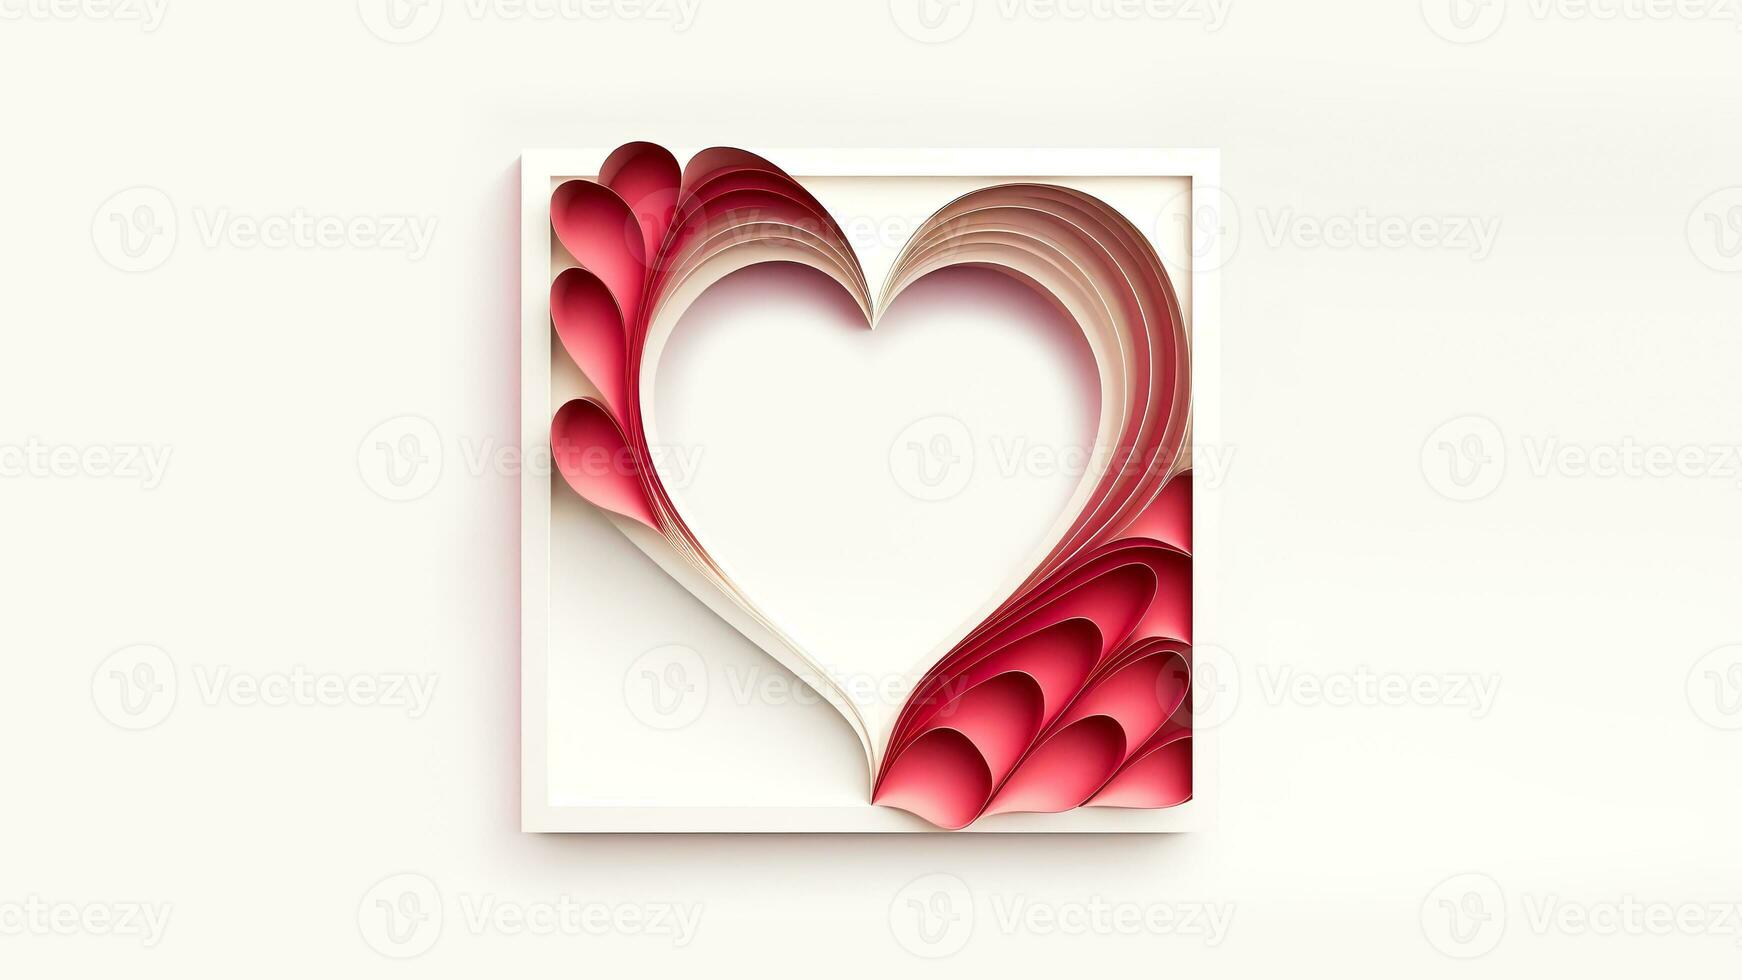 zacht kleur papier besnoeiing hart vorm kader of achtergrond in 3d veroorzaken. foto